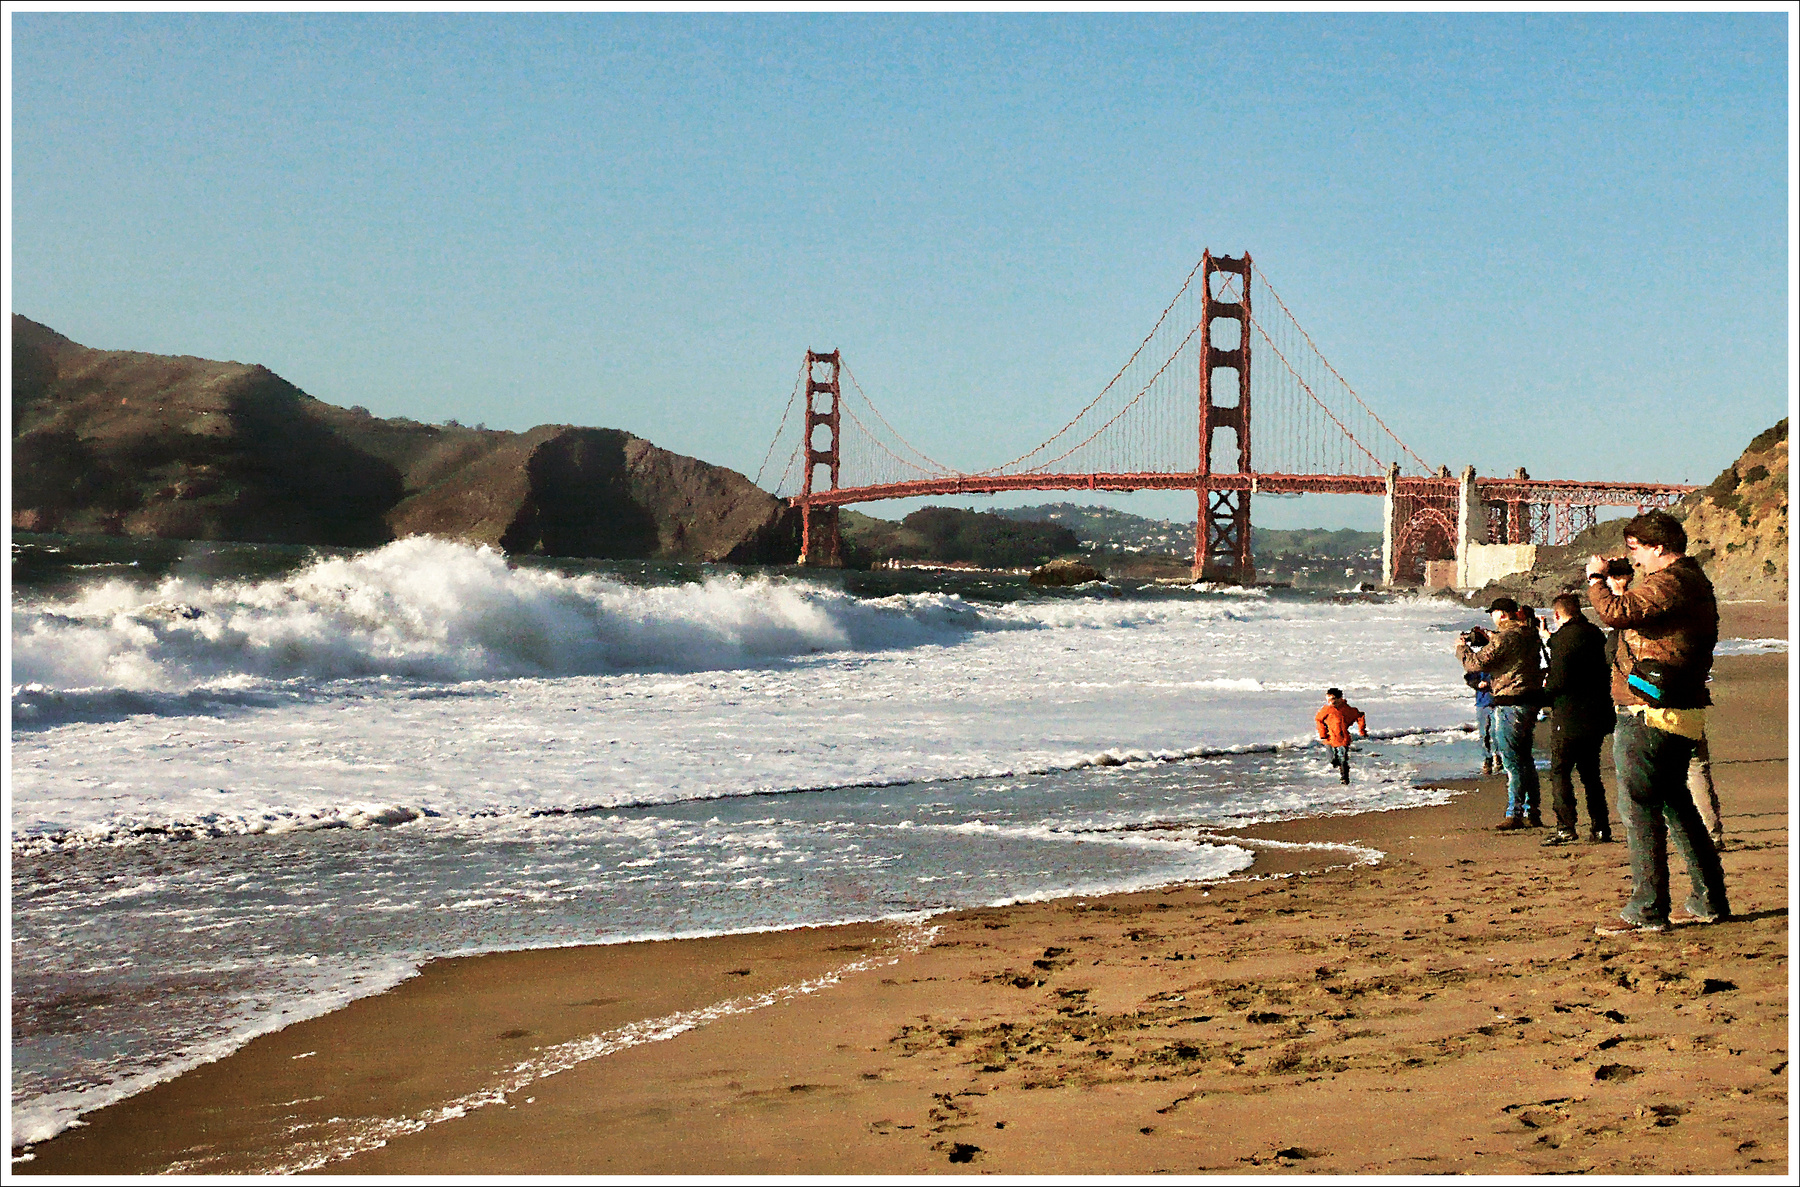 *Фотоклуб Сан-Франциско на фотосессии* фотография путешествие Калифорния город океан Золотой мост жанр берег Фото.Сайт Светлана Мамакина Lihgra Adventure весна